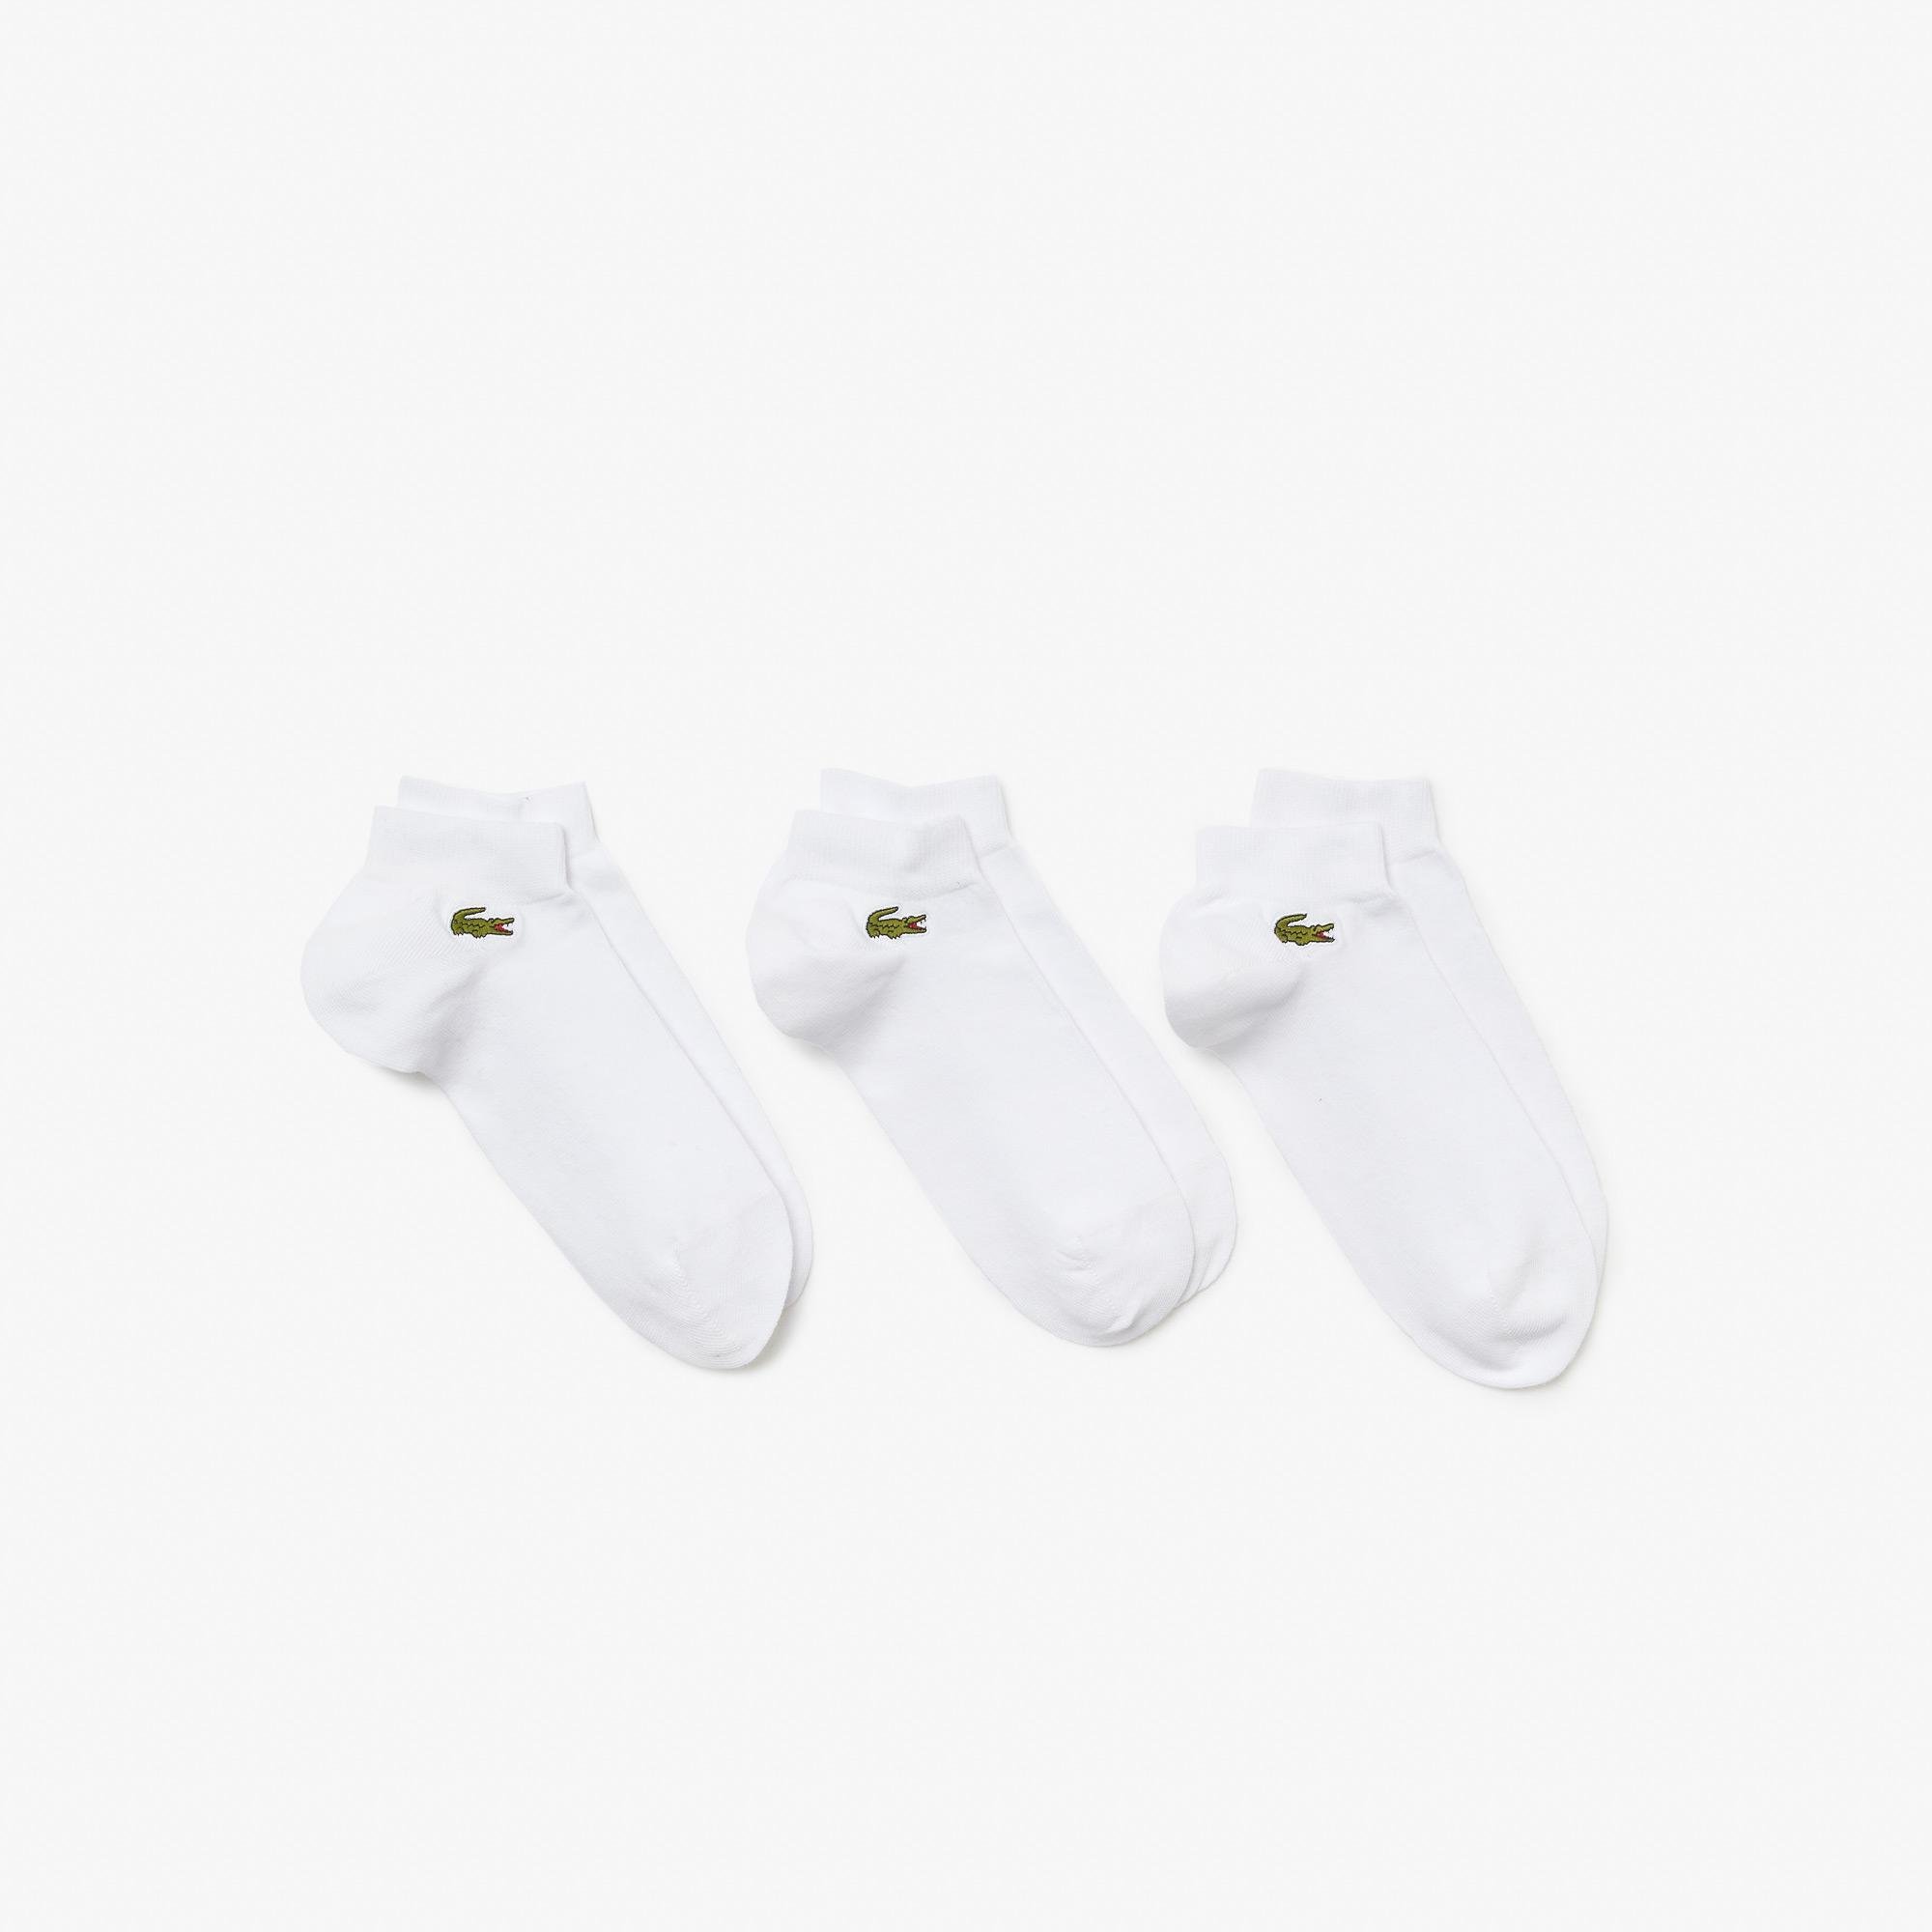 Lacoste balení tří kusů unisex ponožek SPORT s nízkým střihem